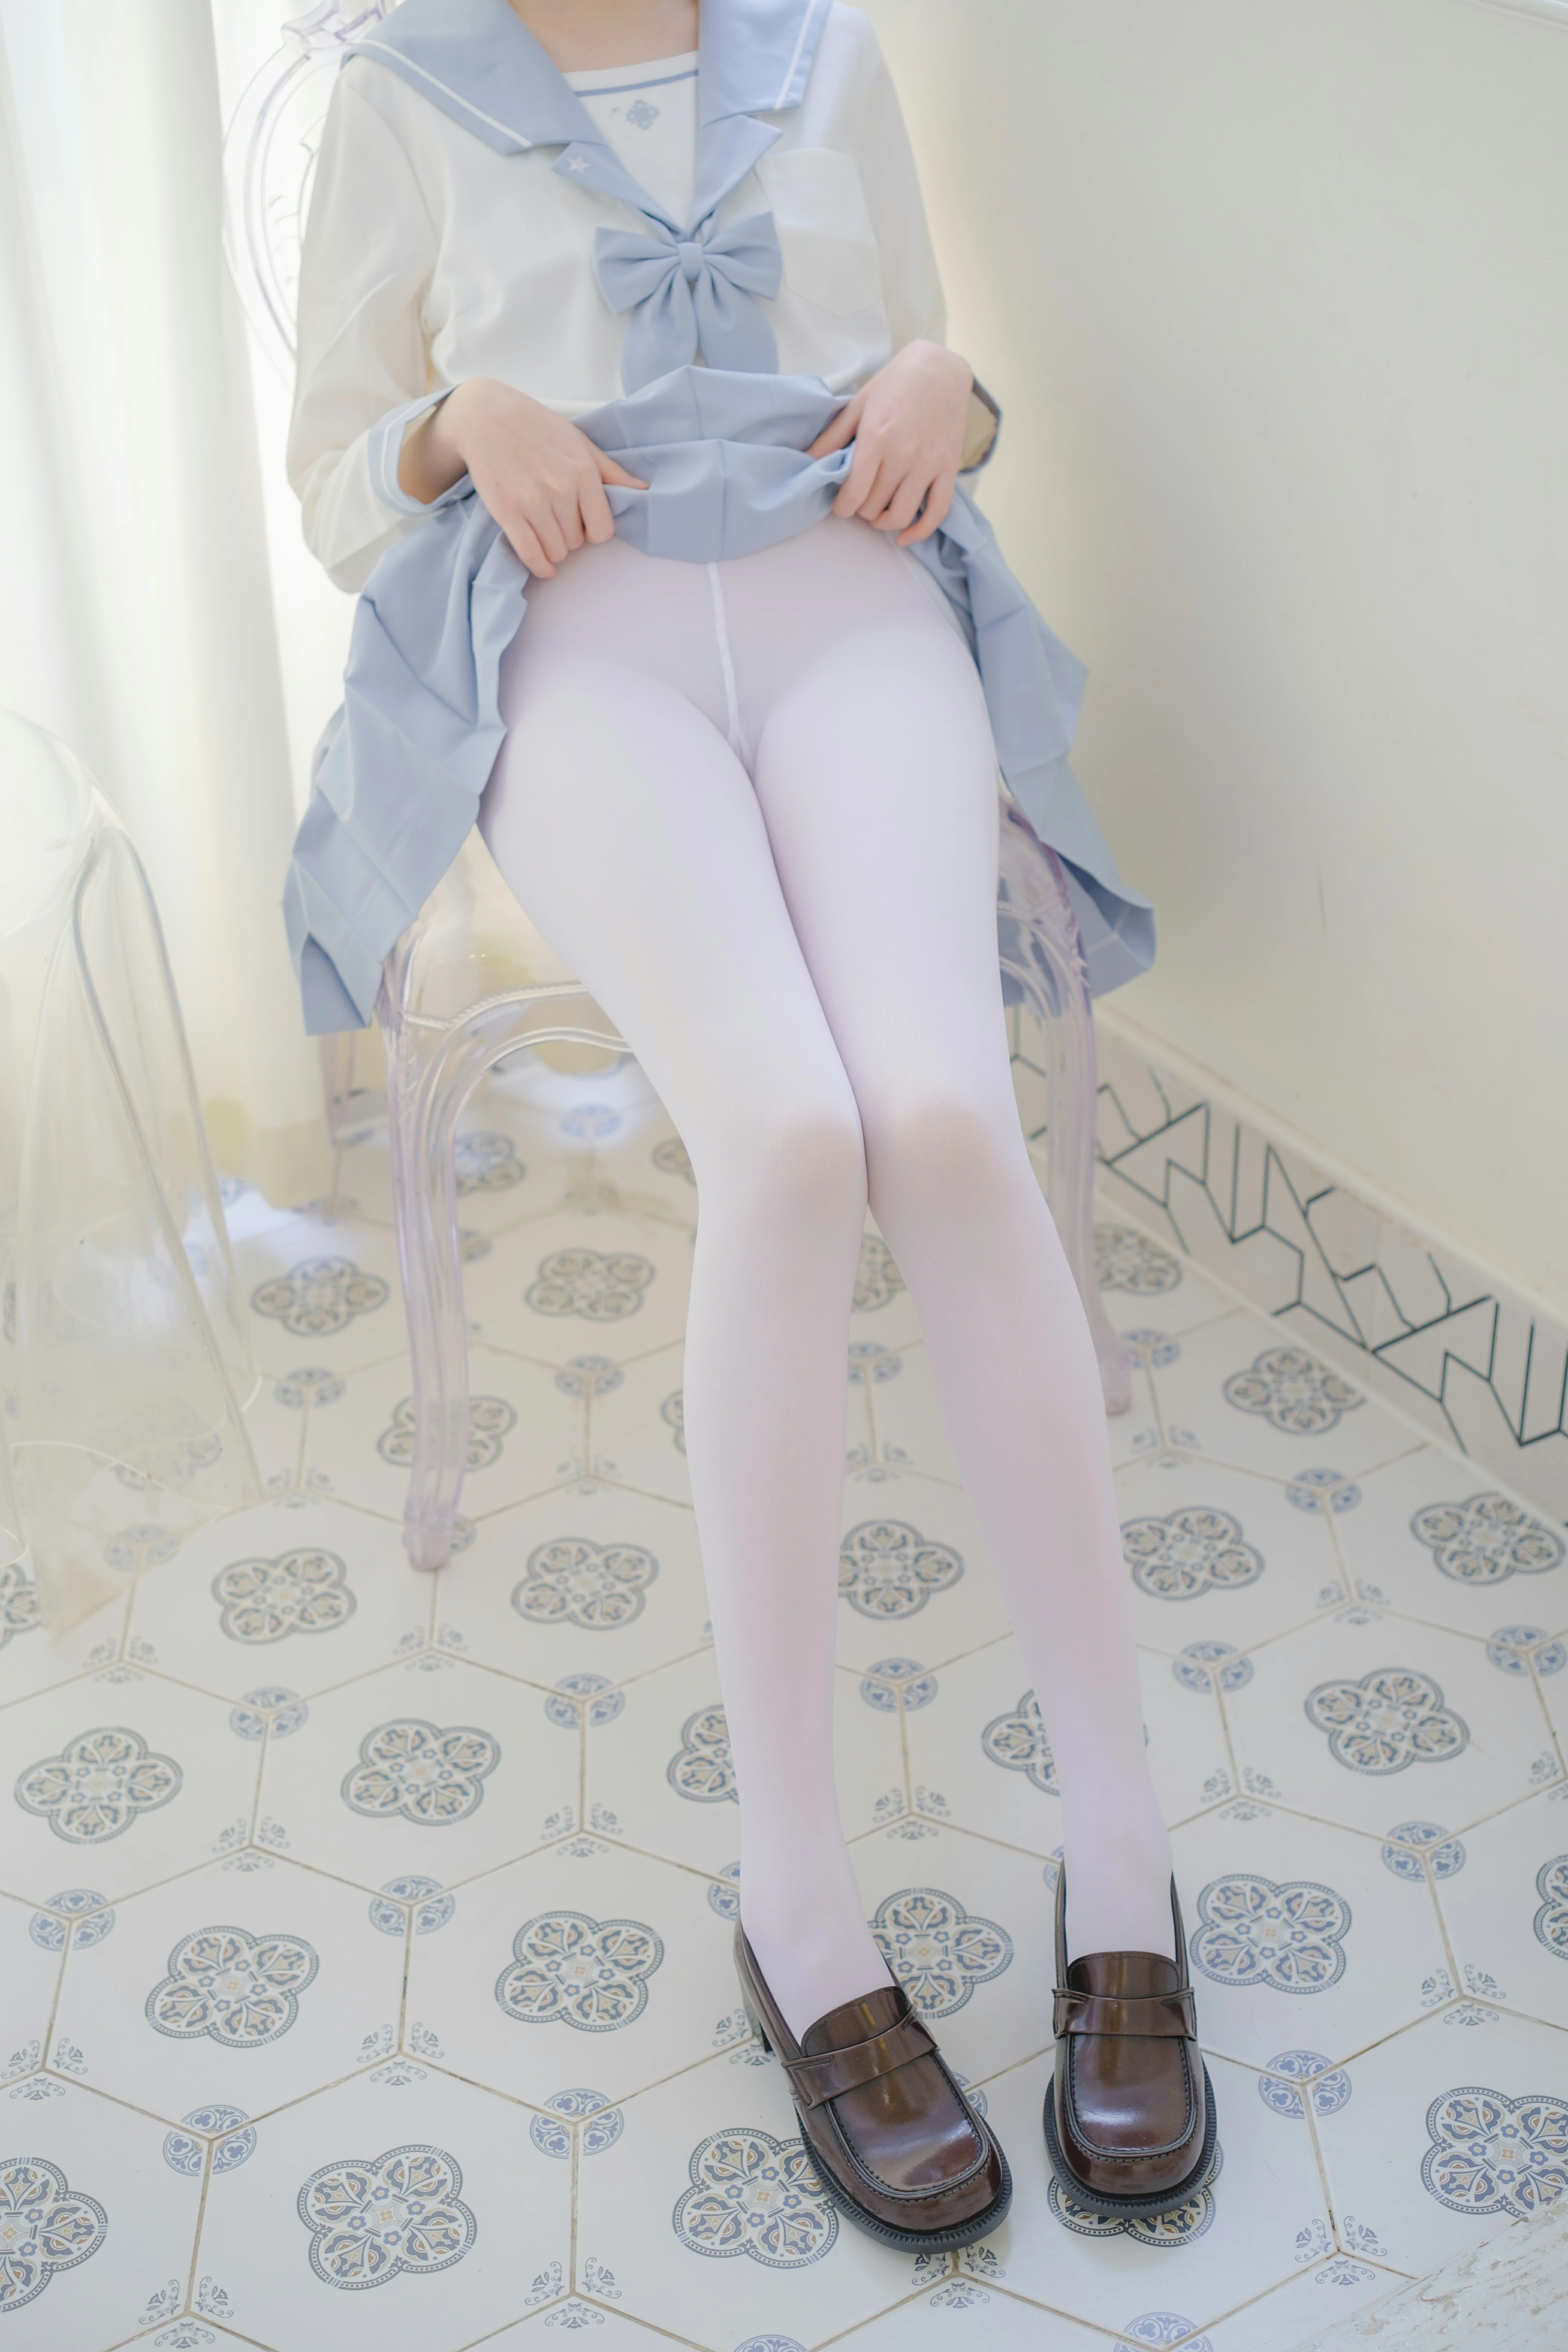 [森萝财团]GZAY4 酒店阳台上的JK制服小萝莉 白色衬衫与灰色短裙加白色丝袜美腿性感私房写真集,0018